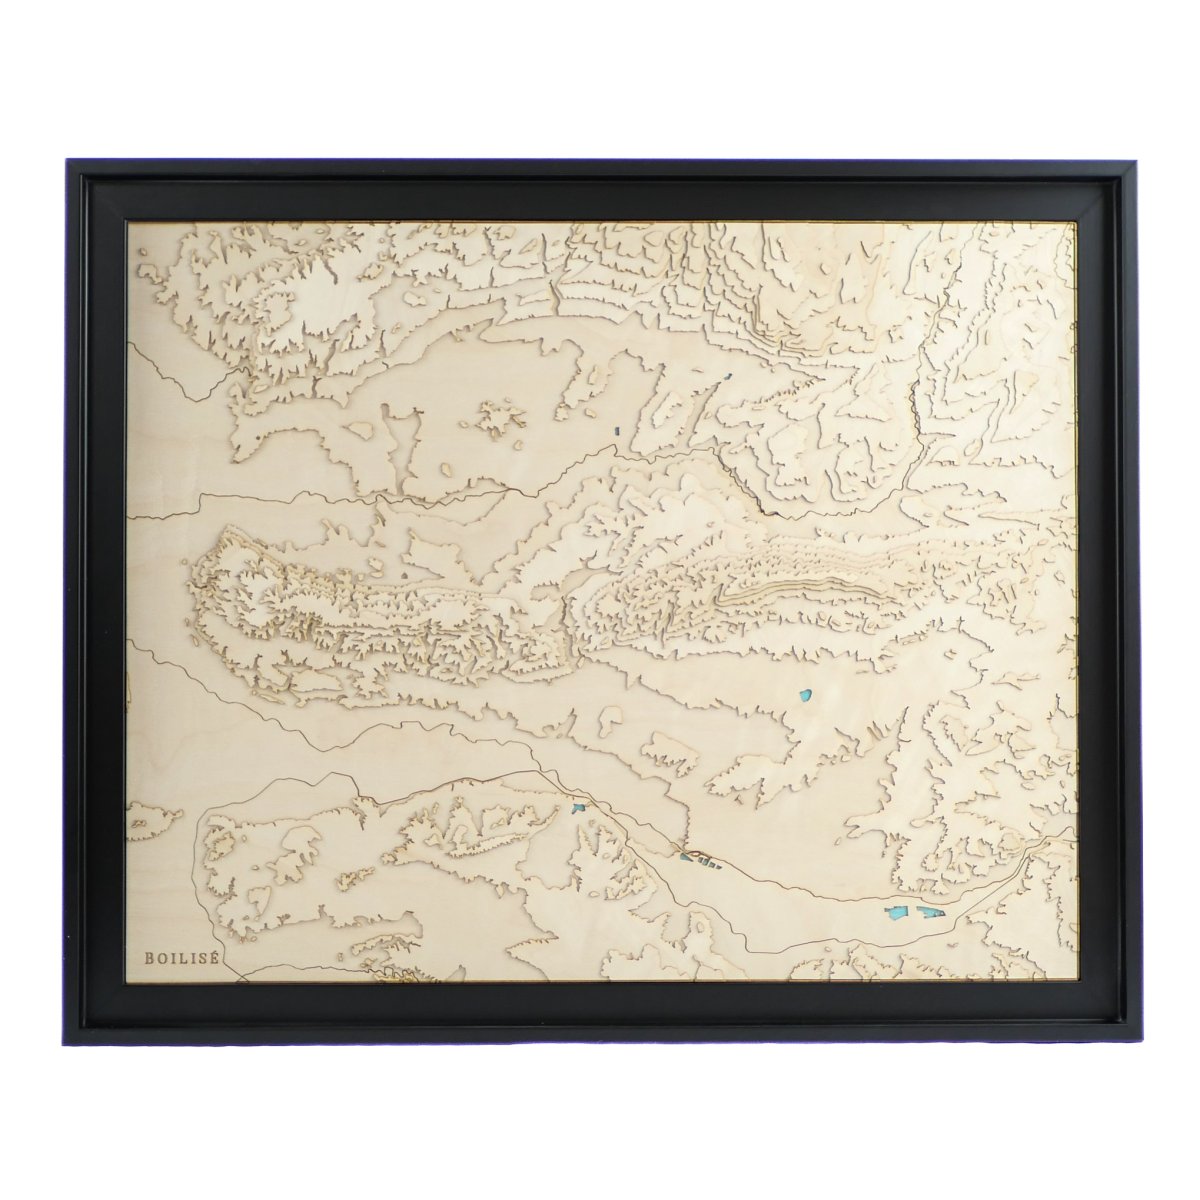 Carte topographique en relief du massif du Lubéron dans une caisse américaine noire